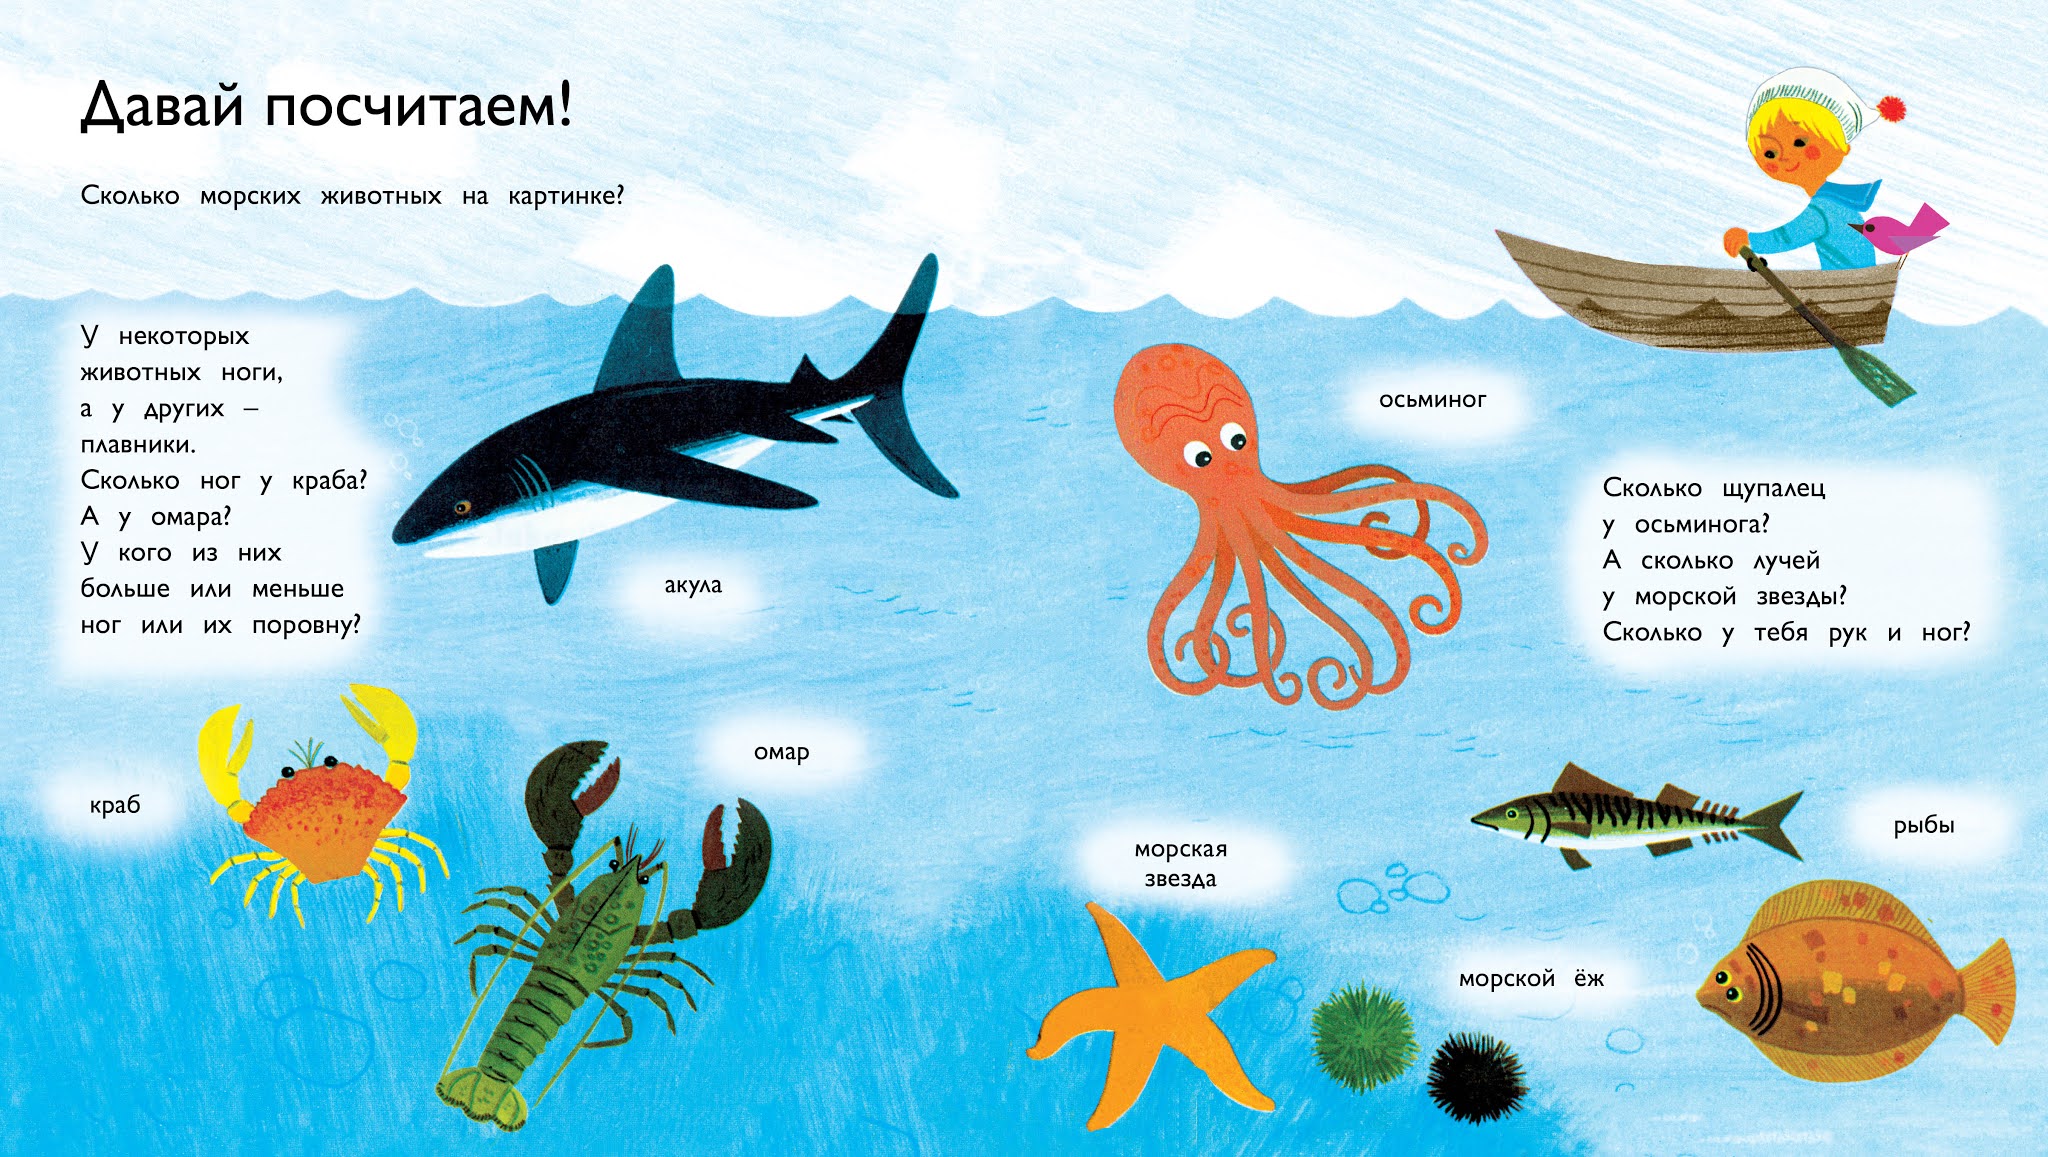 Загадки про океанов. Обитатели морей и океанов для детей. Загадки про морскую рыбу для детей. Загадки об морских обитаьелях. Загадки про морских обитателей для детей.